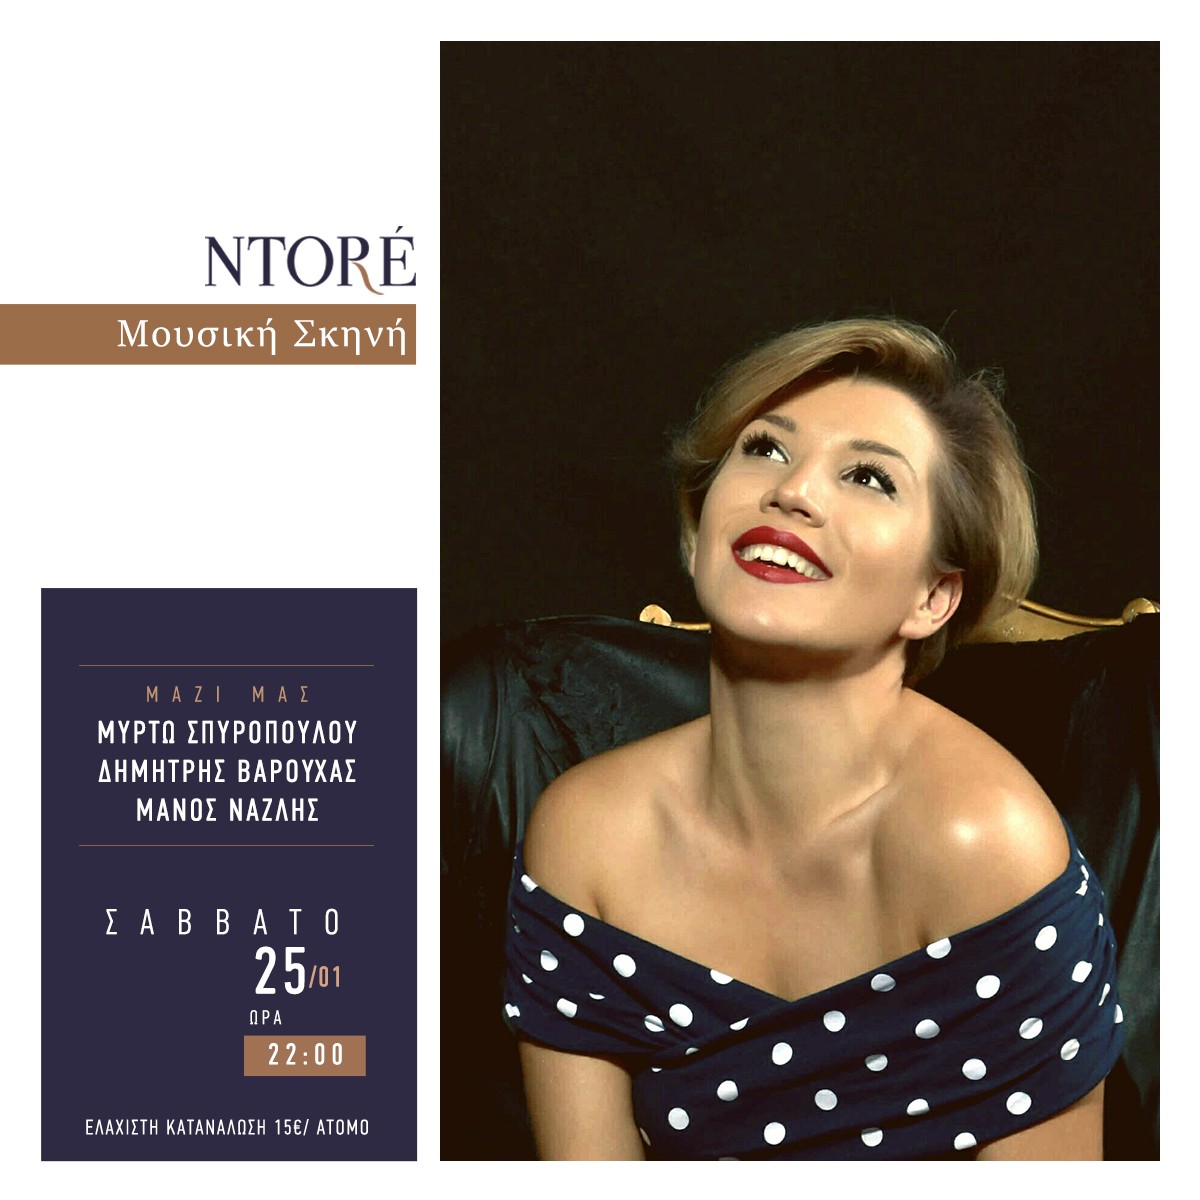 Η Μυρτώ Σπυροπούλου, το Σάββατο 25 Ιανουαρίου, στις 22:00, στη Μουσική Σκηνή Ntoré!